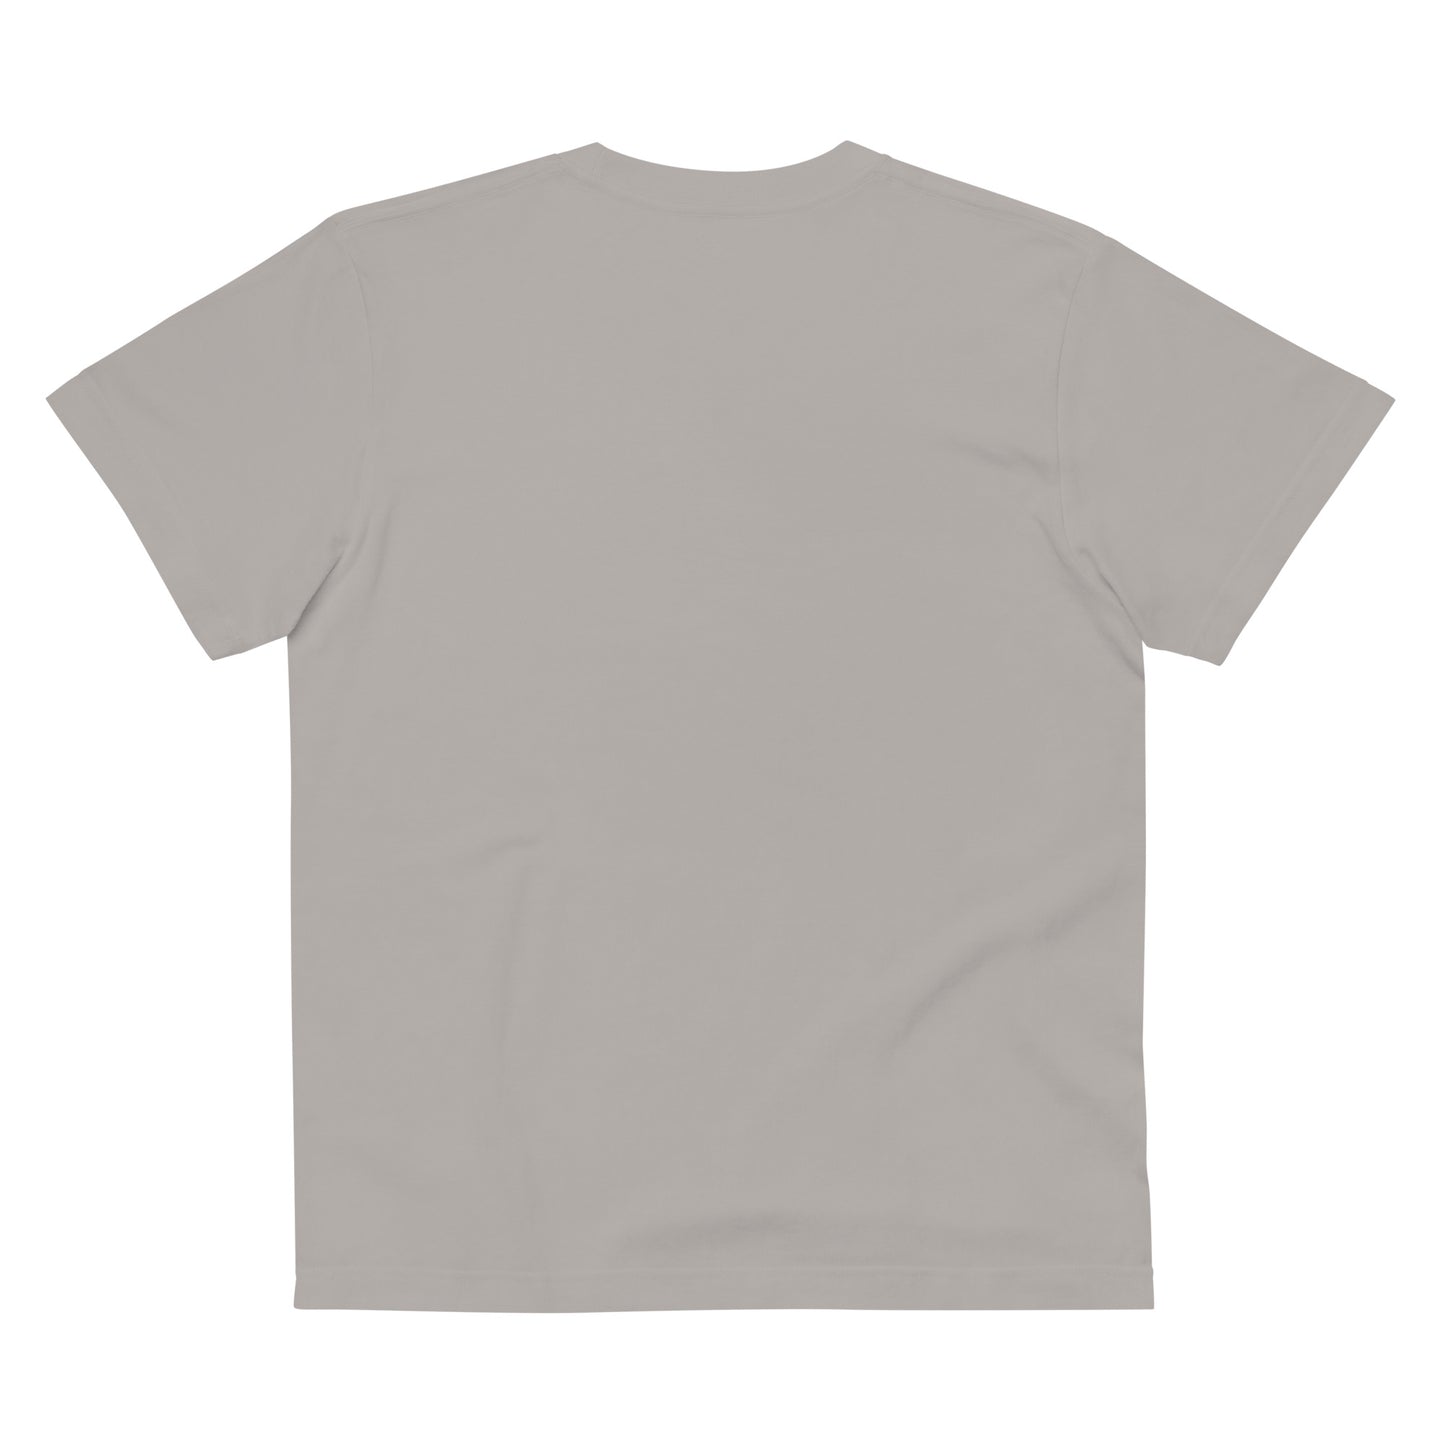 D007 - T-shirt kapas berkualiti tinggi (MC Super Sports: Kelabu/Perak)